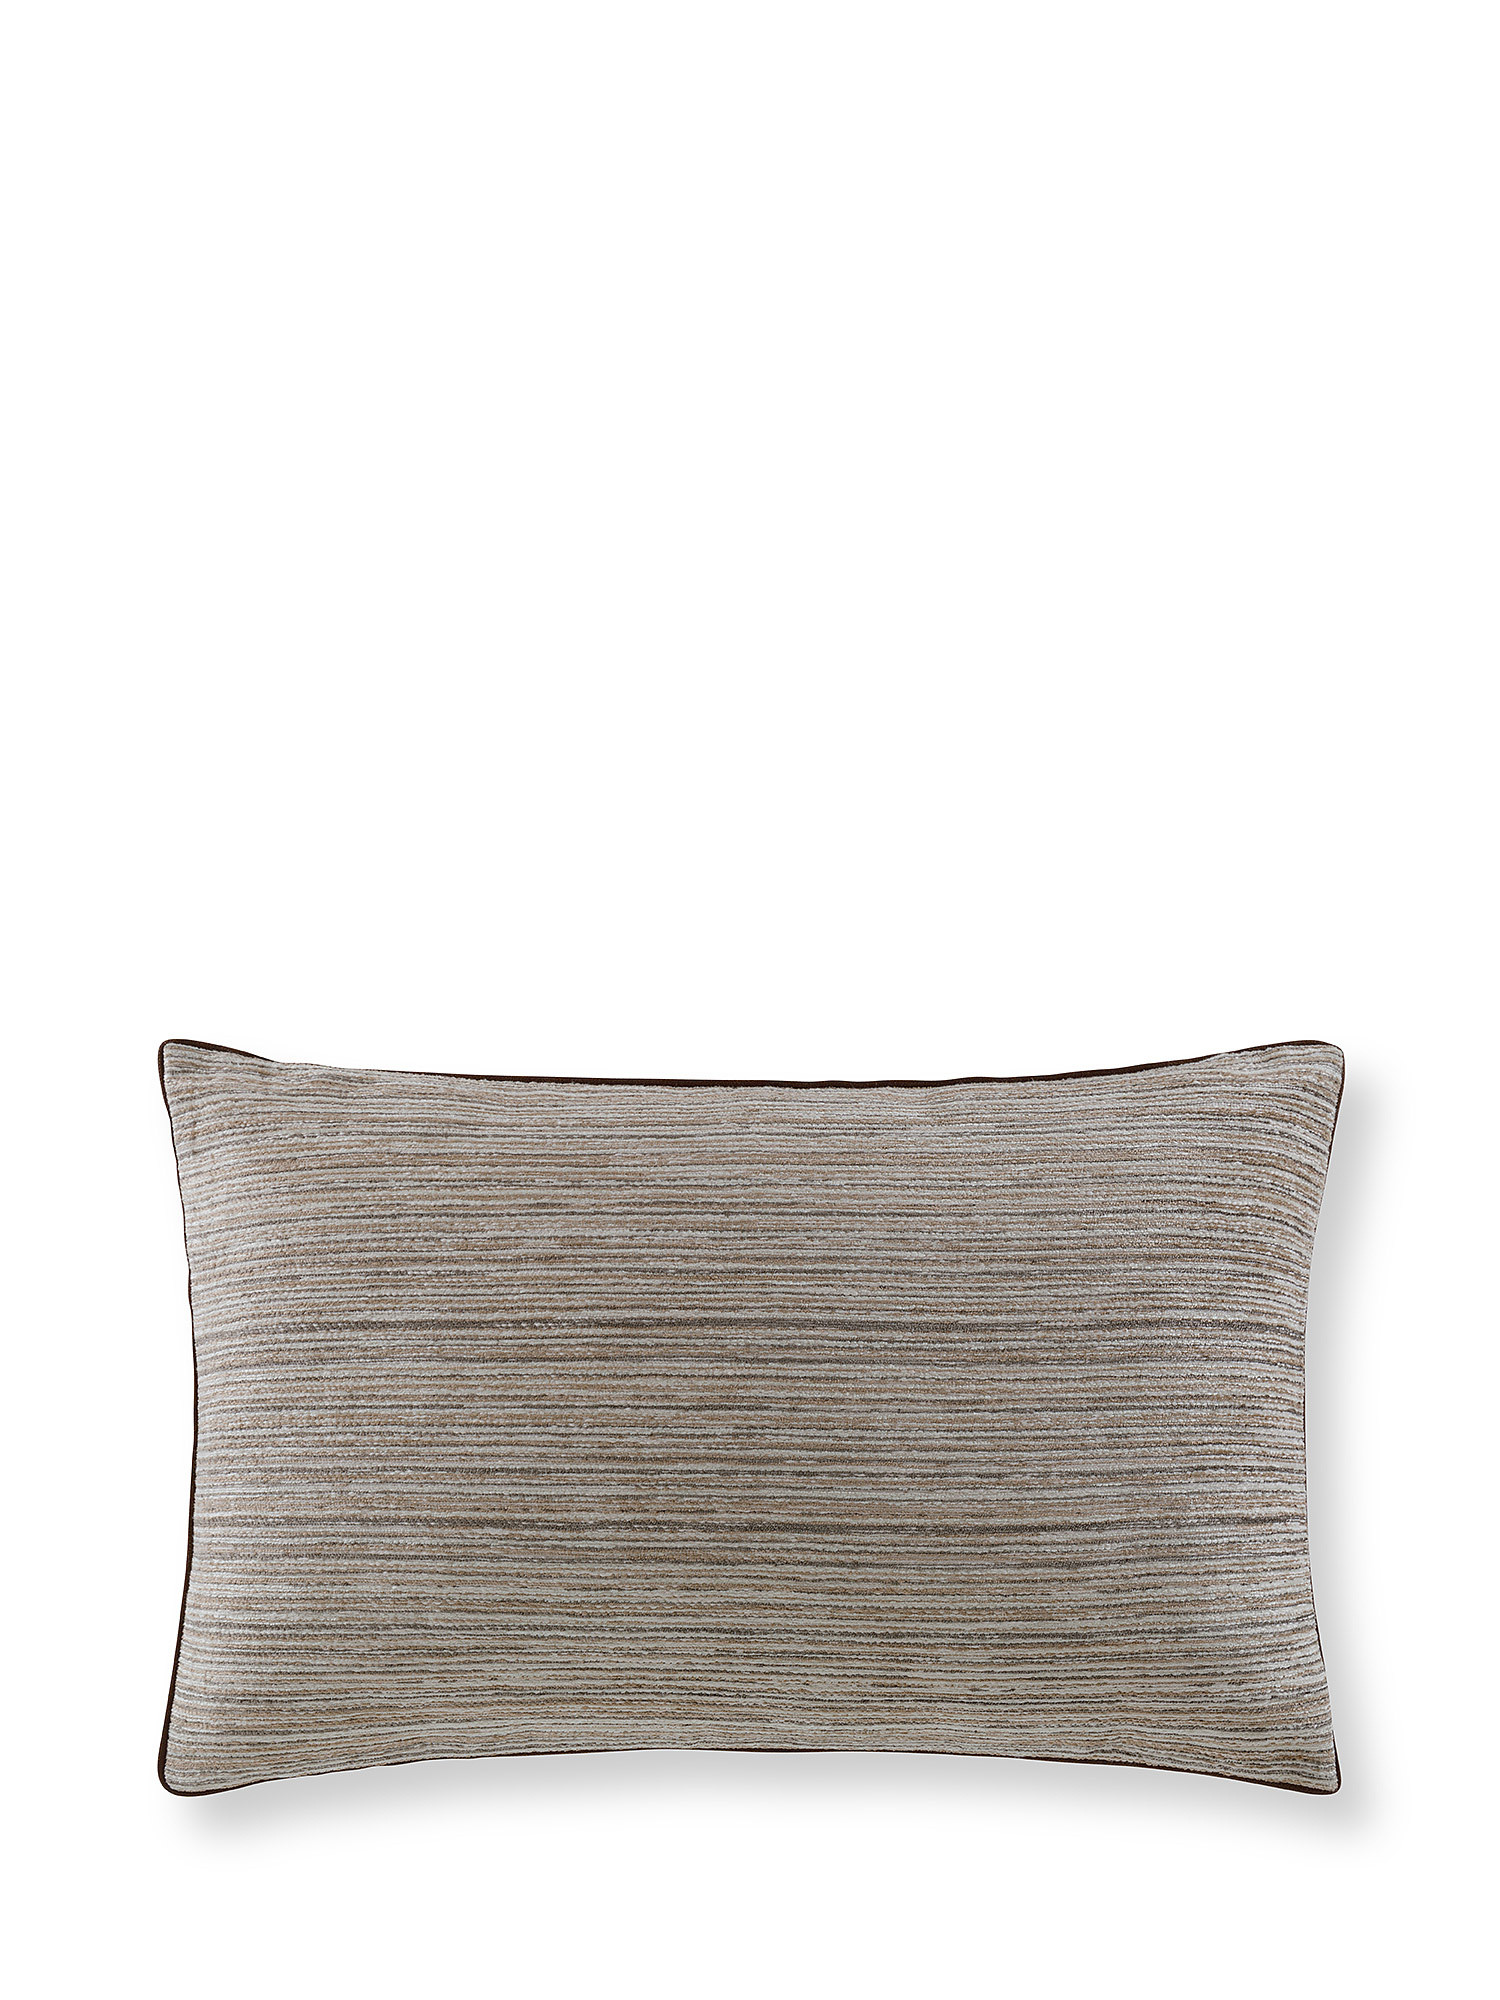 Жаккардовая подушка с окантовкой 35х55см Coincasa, коричневый